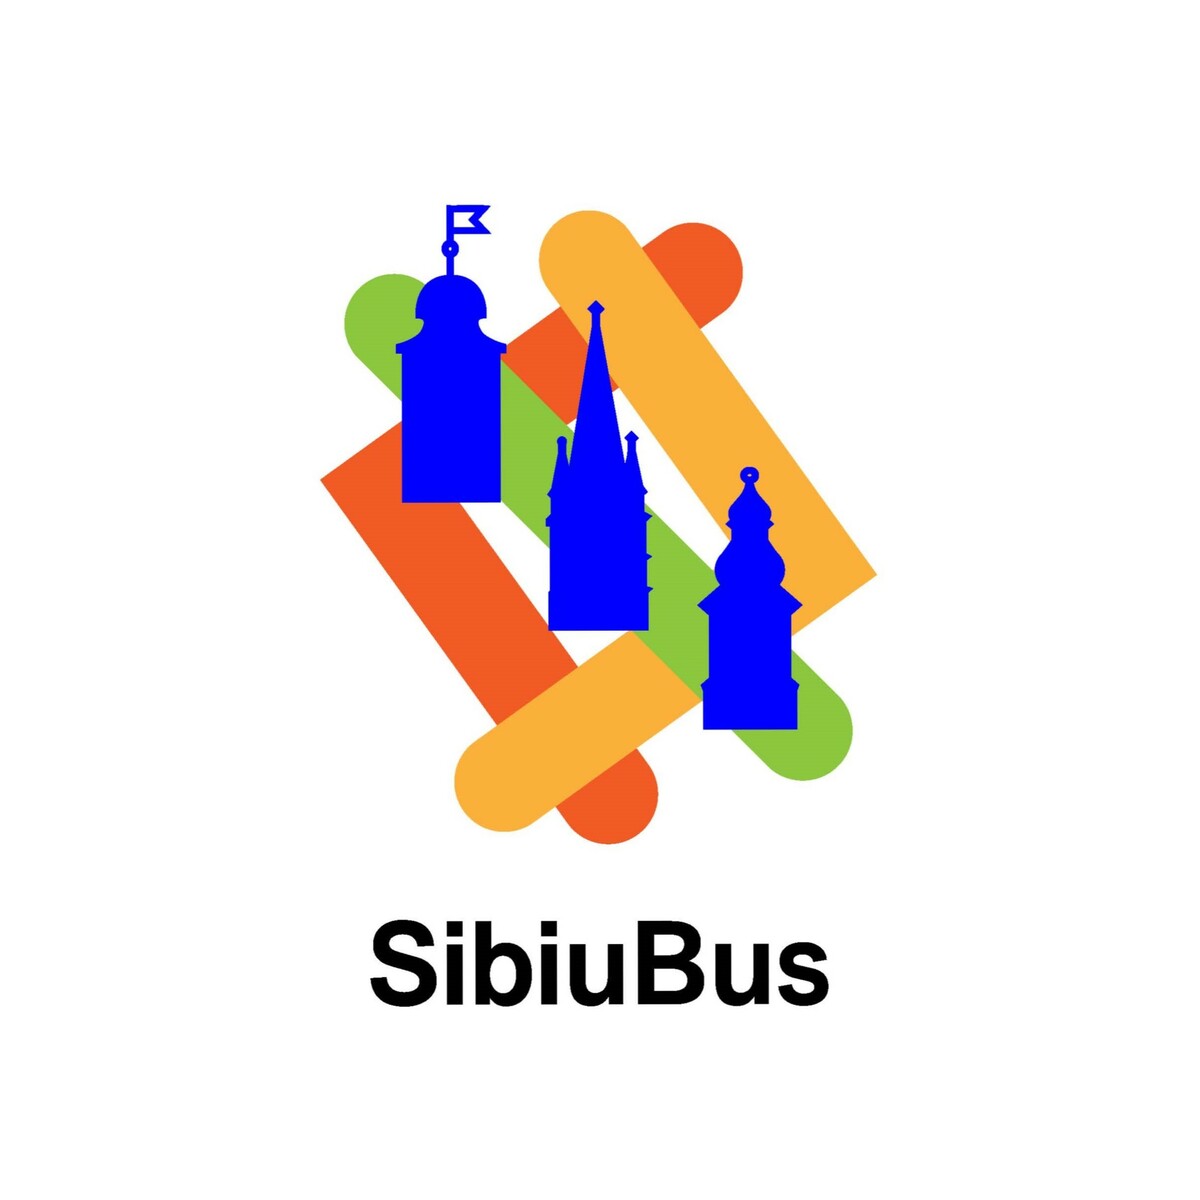 Primăria Sibiu lansează o nouă aplicație pentru transportul public - SIBIU BUS